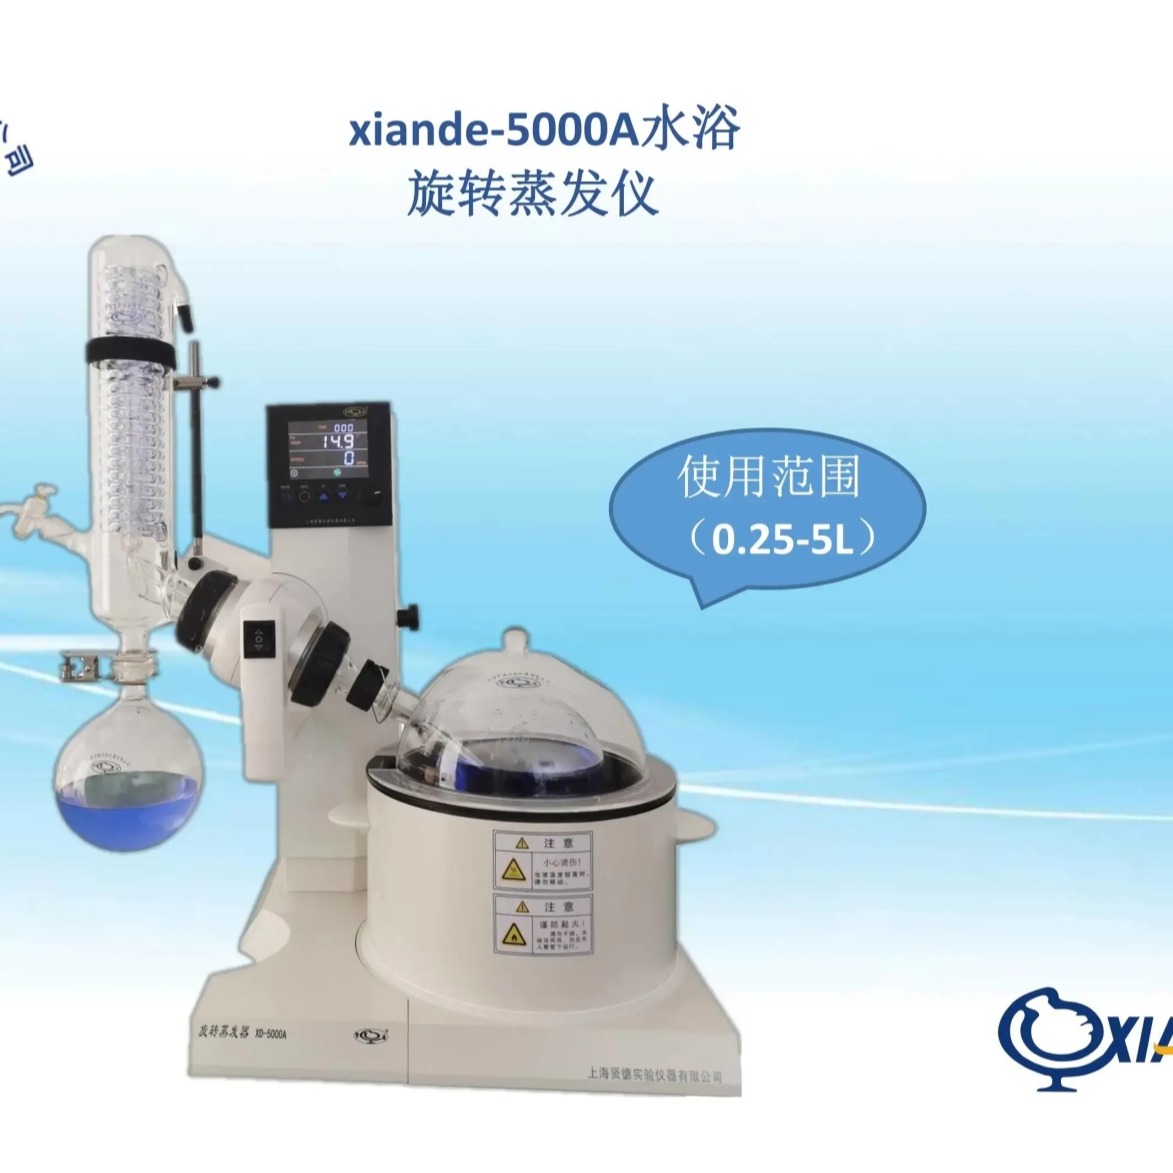 上海贤德旋转蒸发仪xian de系列(5L)xiande-5000A